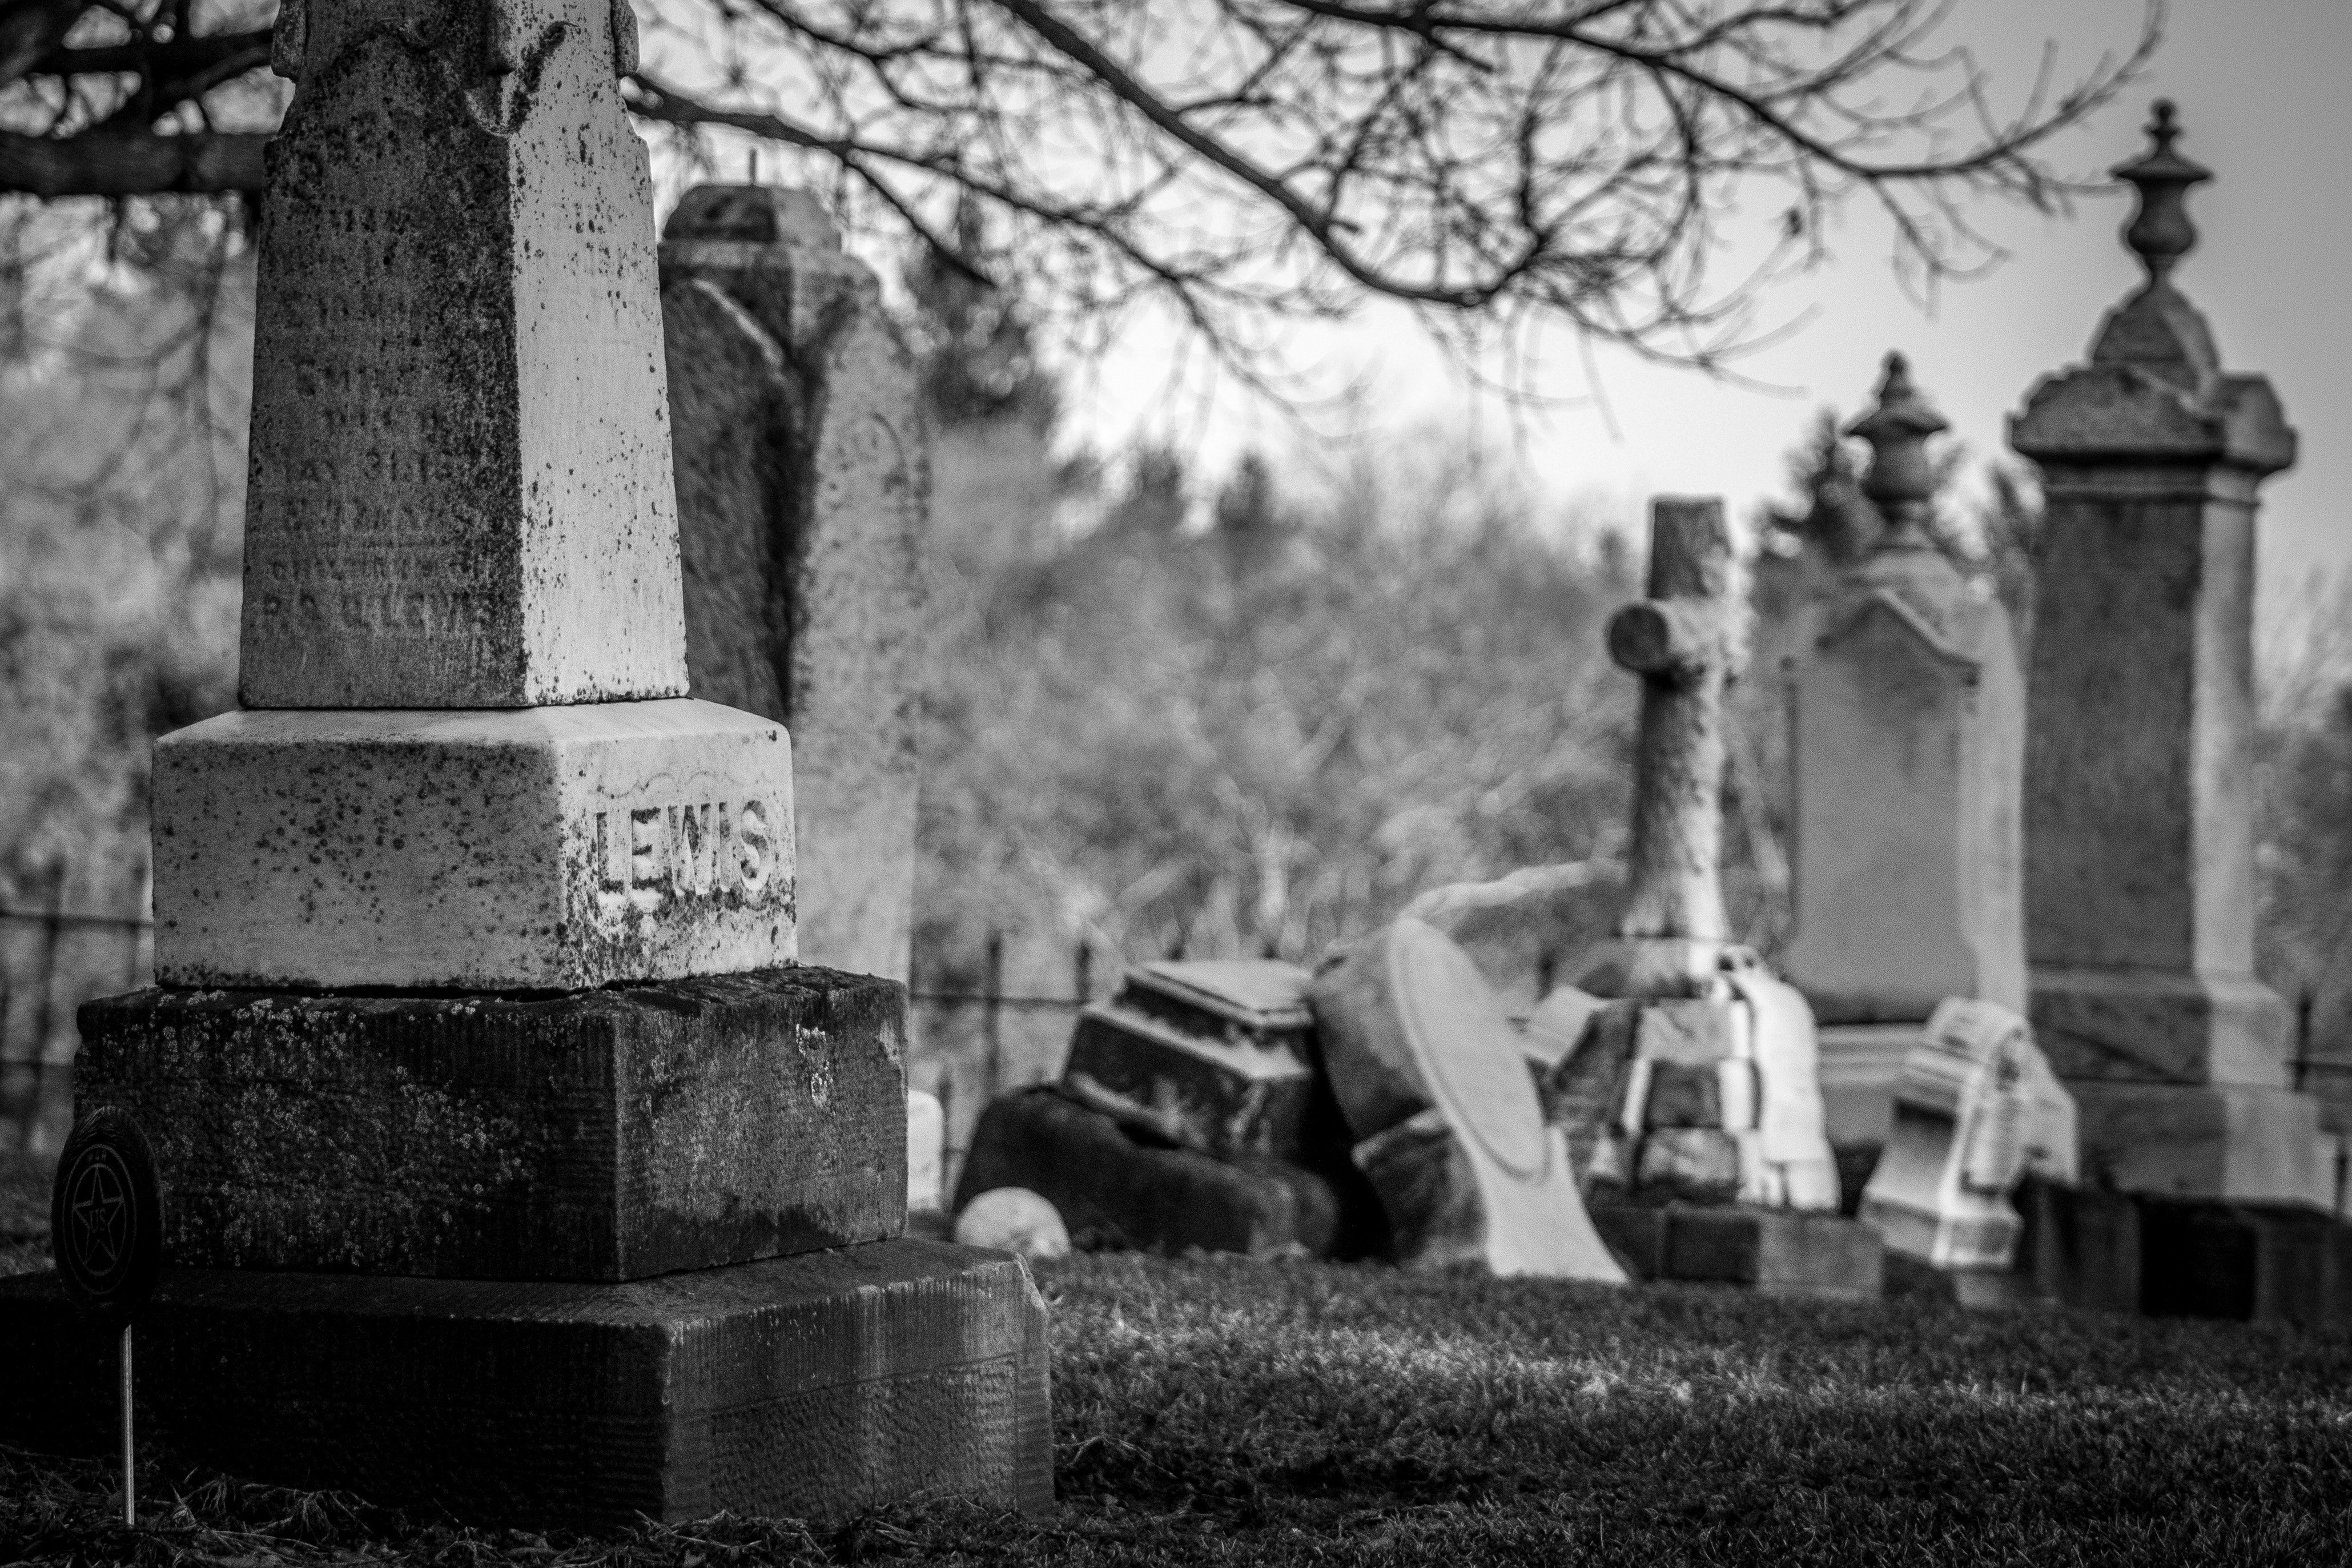 wendy scofield 531052 unsplash.jpg?resize=1200,630 - Un étudiant profane un cimetière et se fait enfermer dans une tombe...